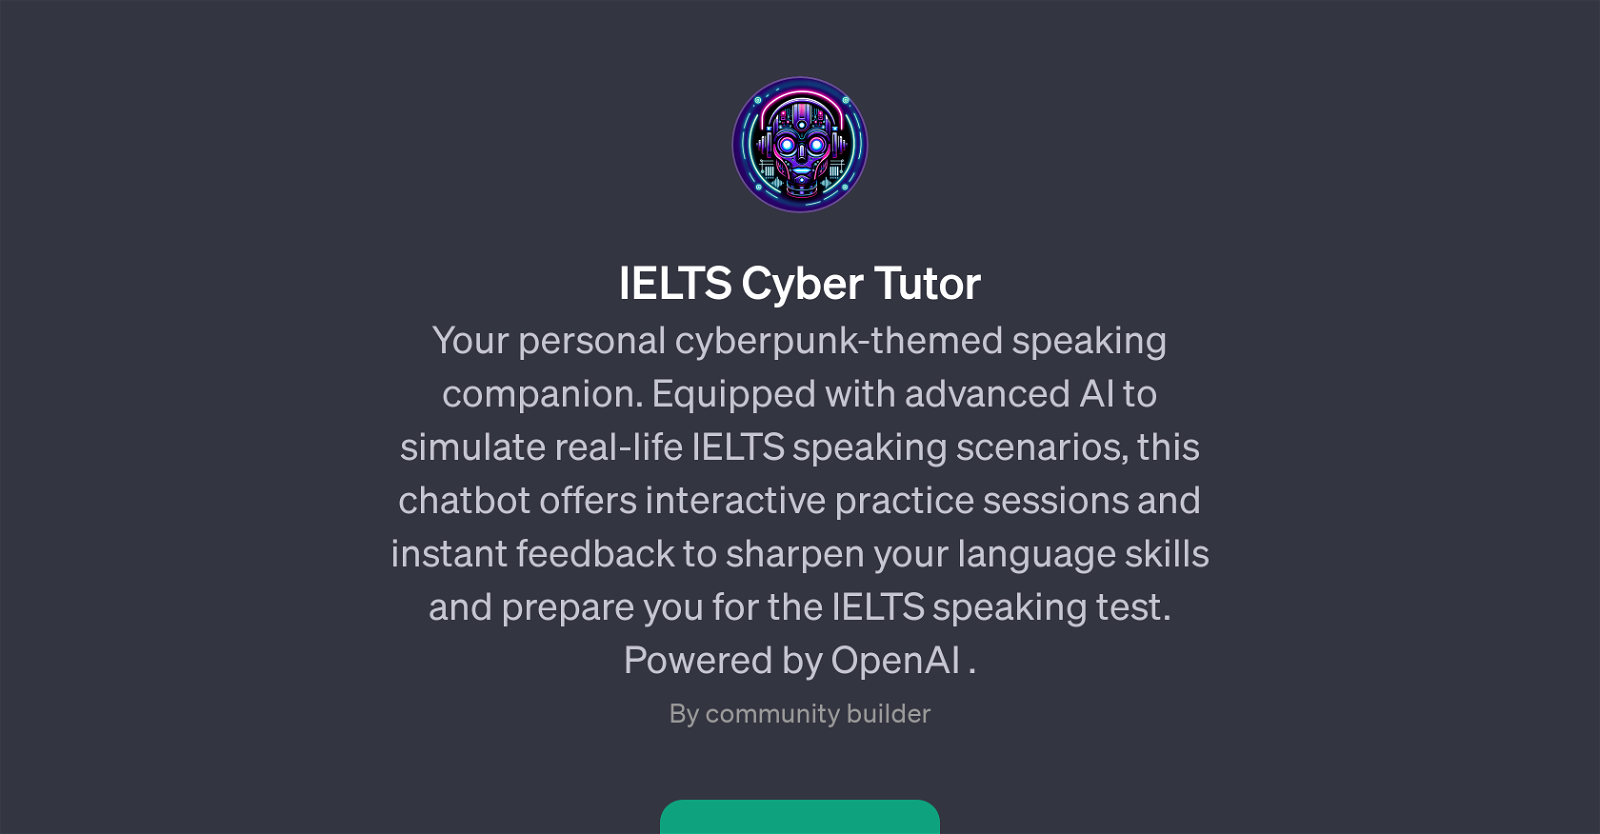 IELTS Cyber Tutor website